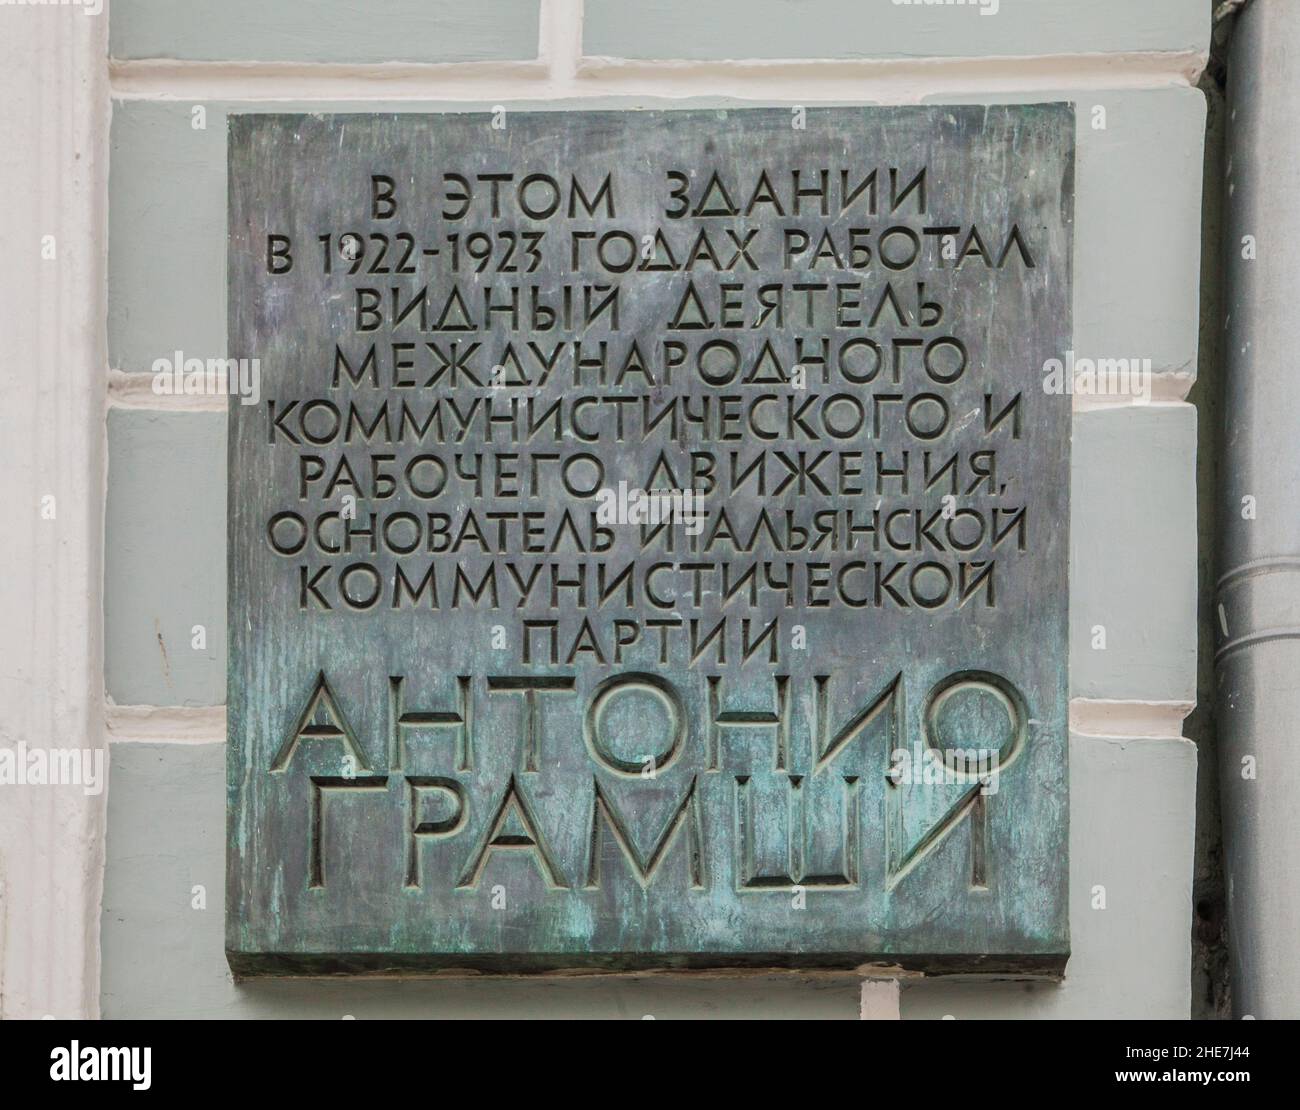 Mosca, Russia - una targa sul muro in memoria del fondatore del partito comunista italiano Antonio Gramsci Foto Stock